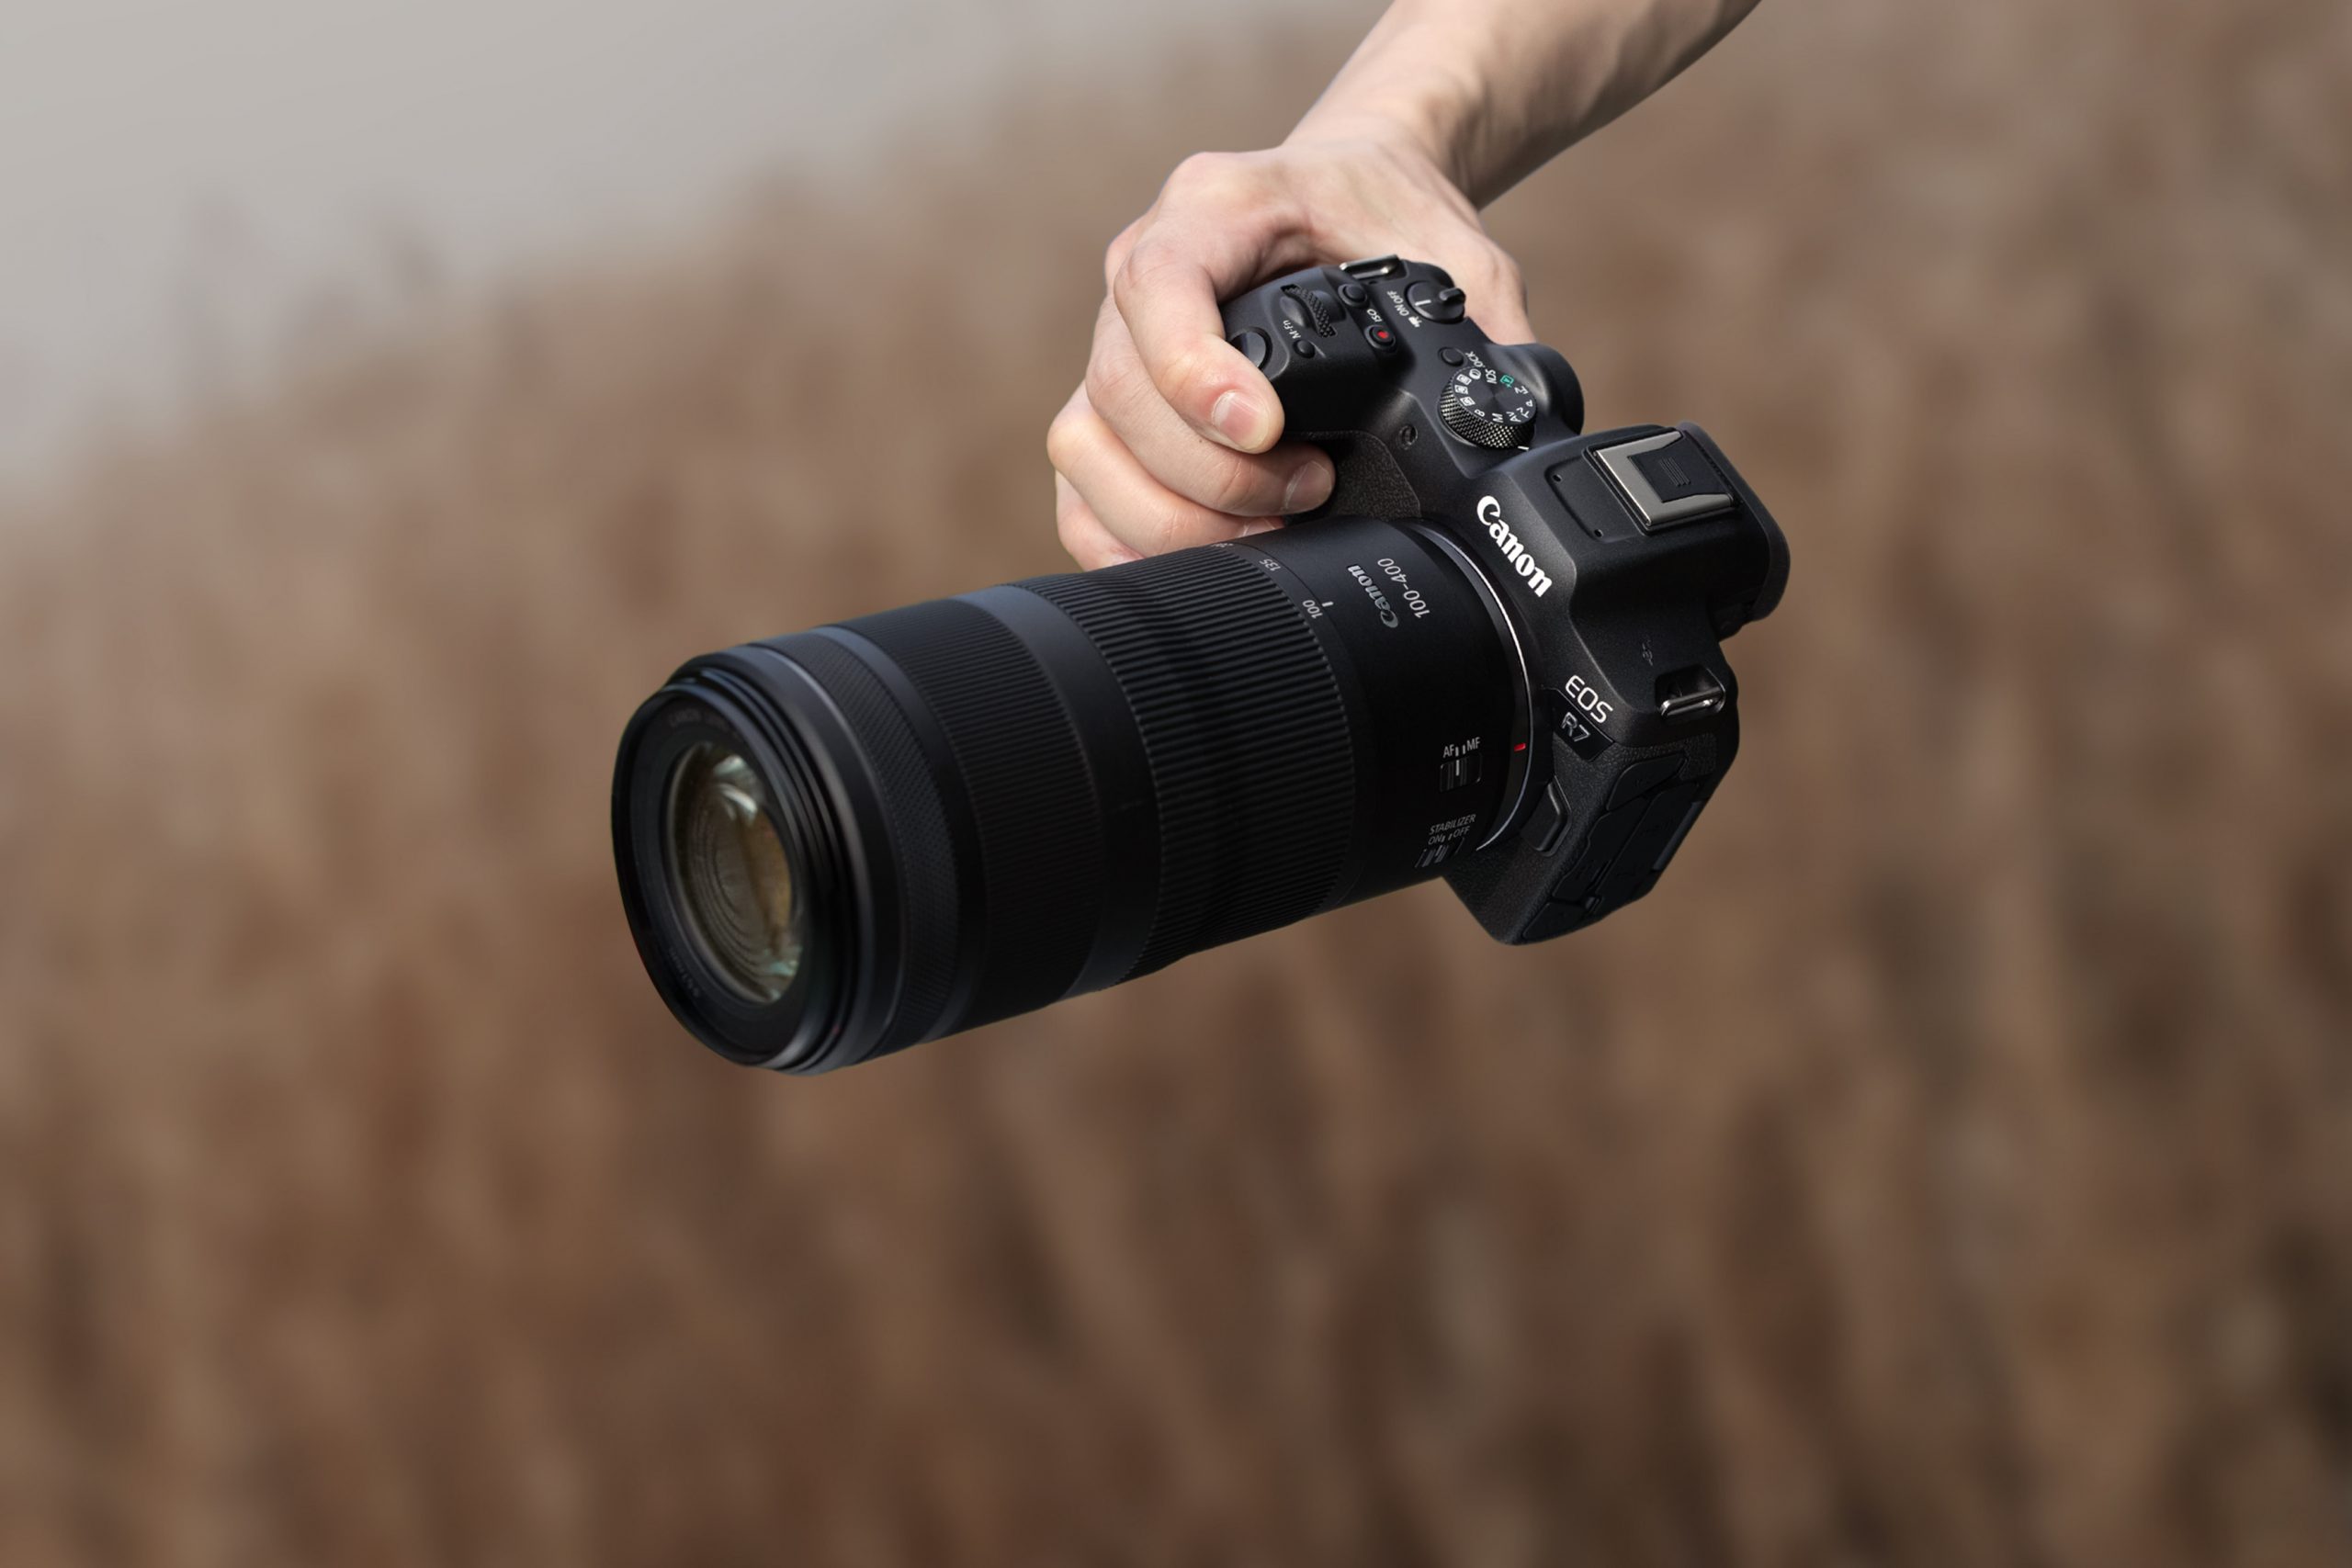 Canon 全新 EOS R7 APS-C 無反光鏡相機搭配全新 RF-S 18-150mm f/3.5-6.3 IS STM 高倍率變焦鏡，精彩追焦快穩準震撼登場 @3C 達人廖阿輝